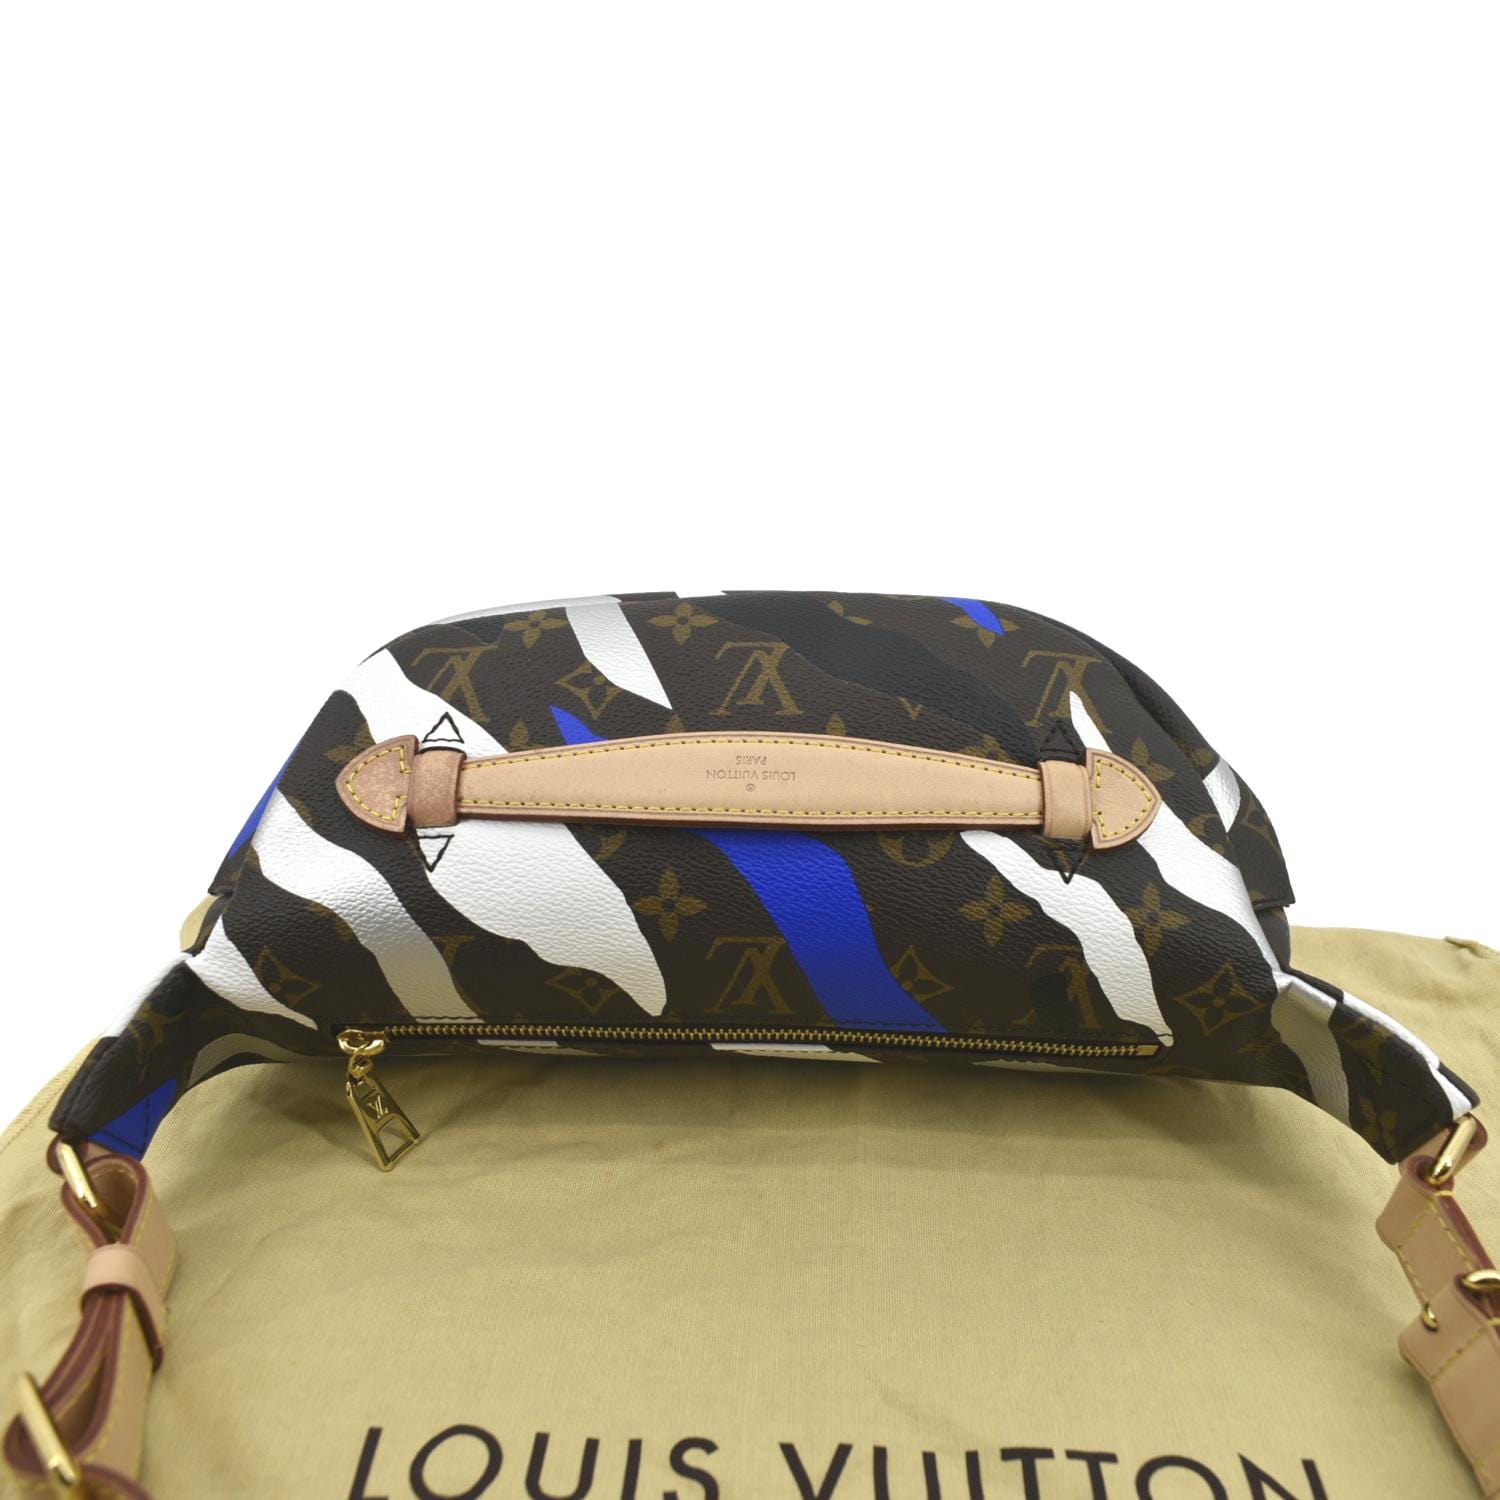 Louis Vuitton Lmtd Ed. League of Legends Bumbag